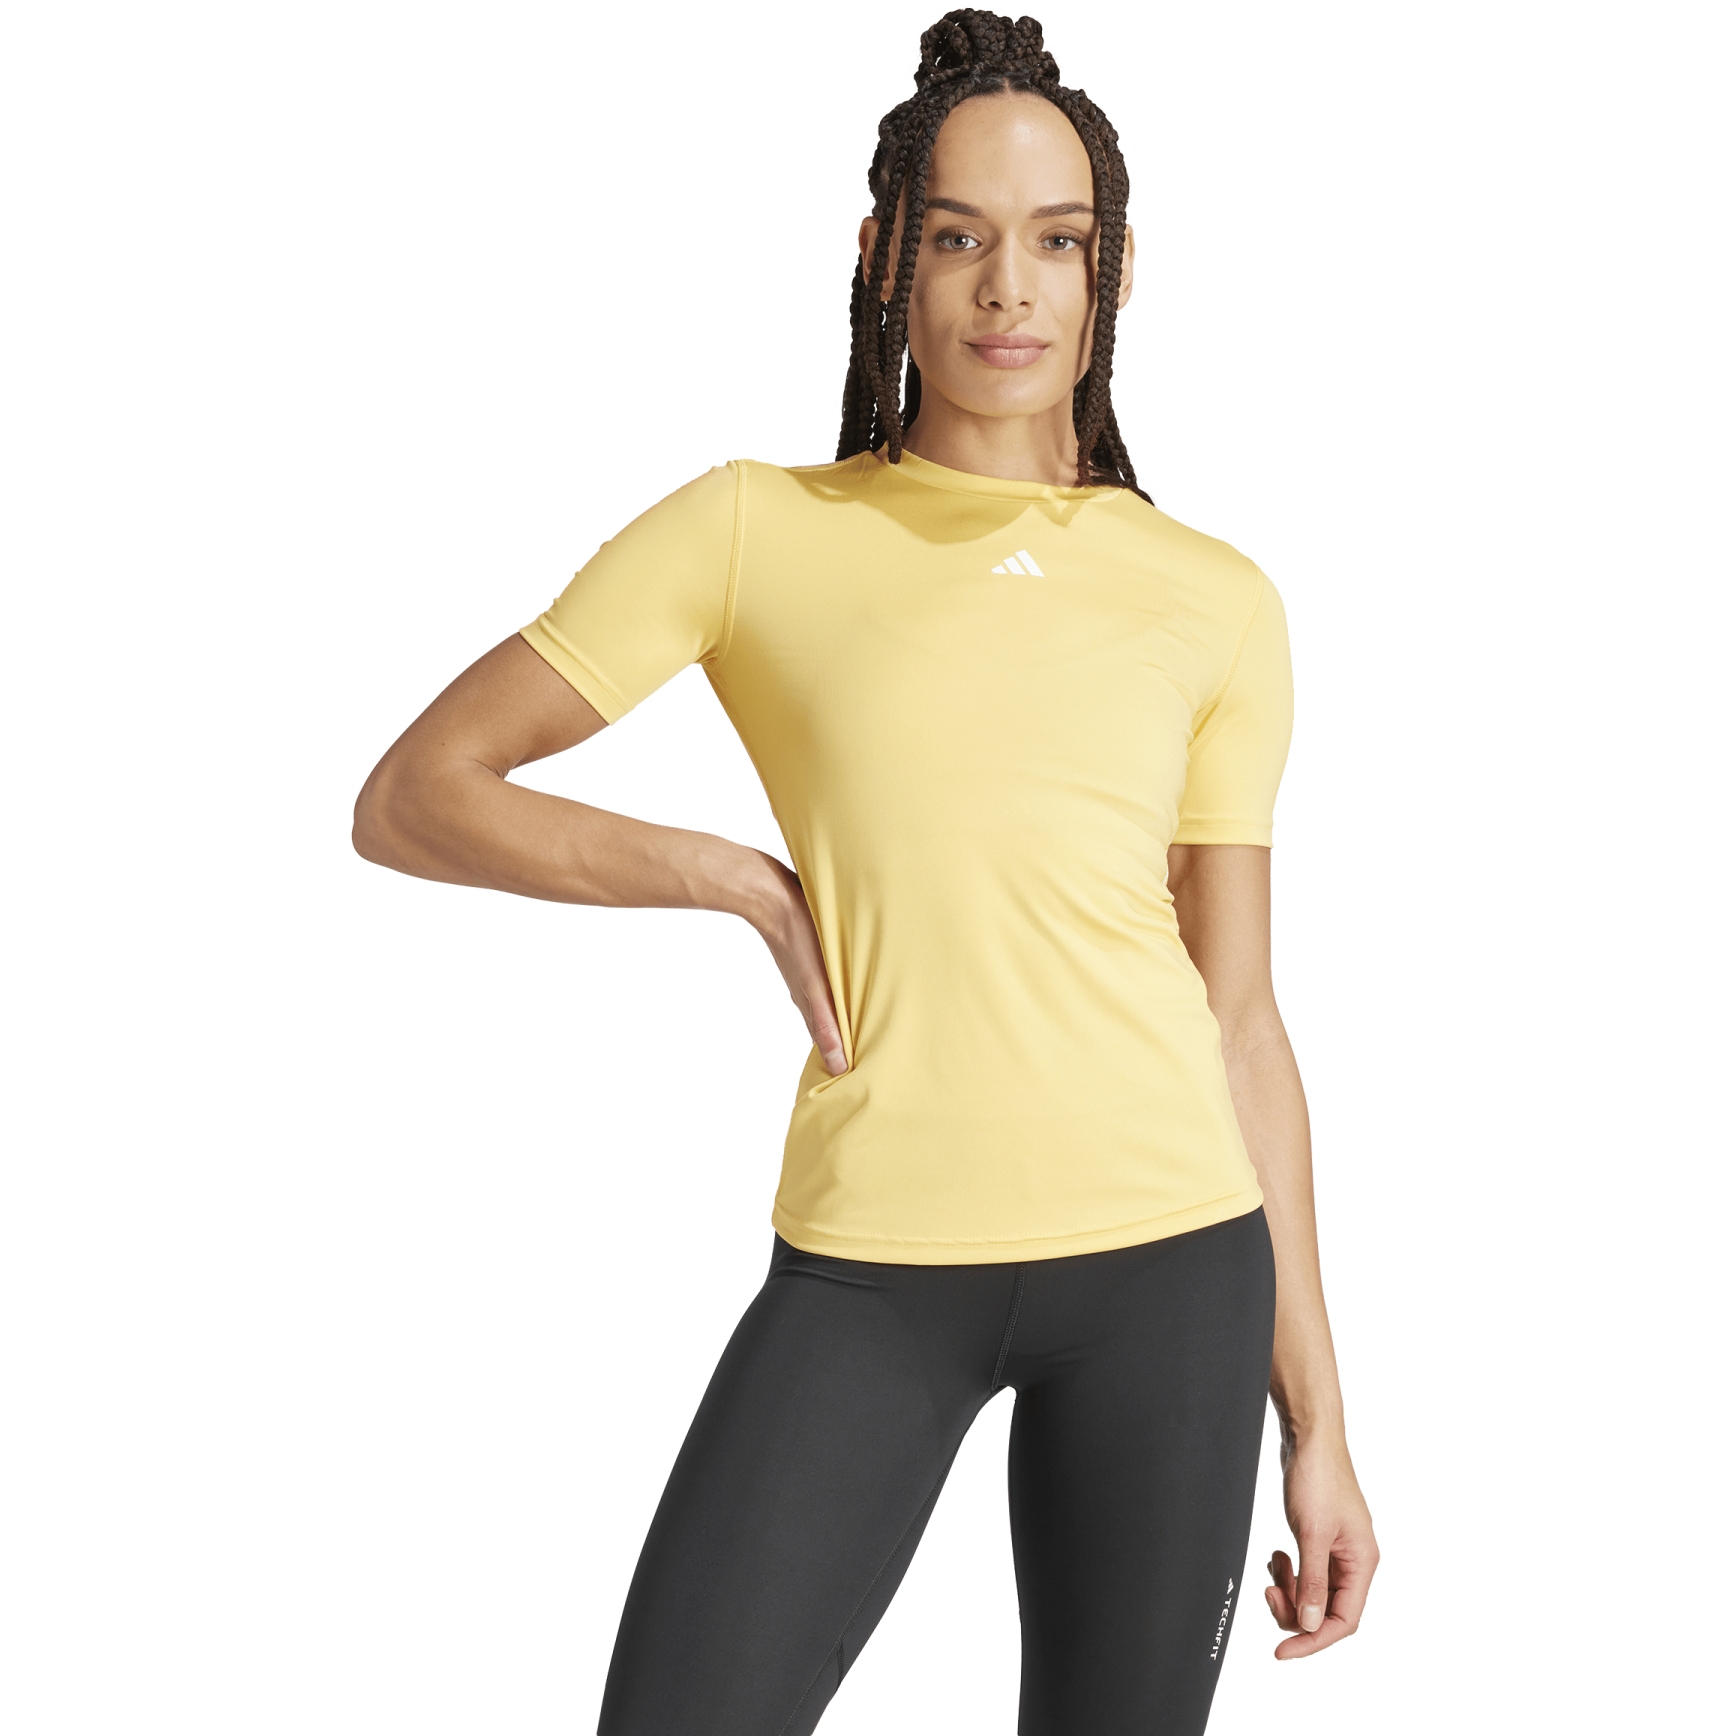 Produktbild von adidas Techfit Training T-Shirt Damen - semi spark/white IT6727